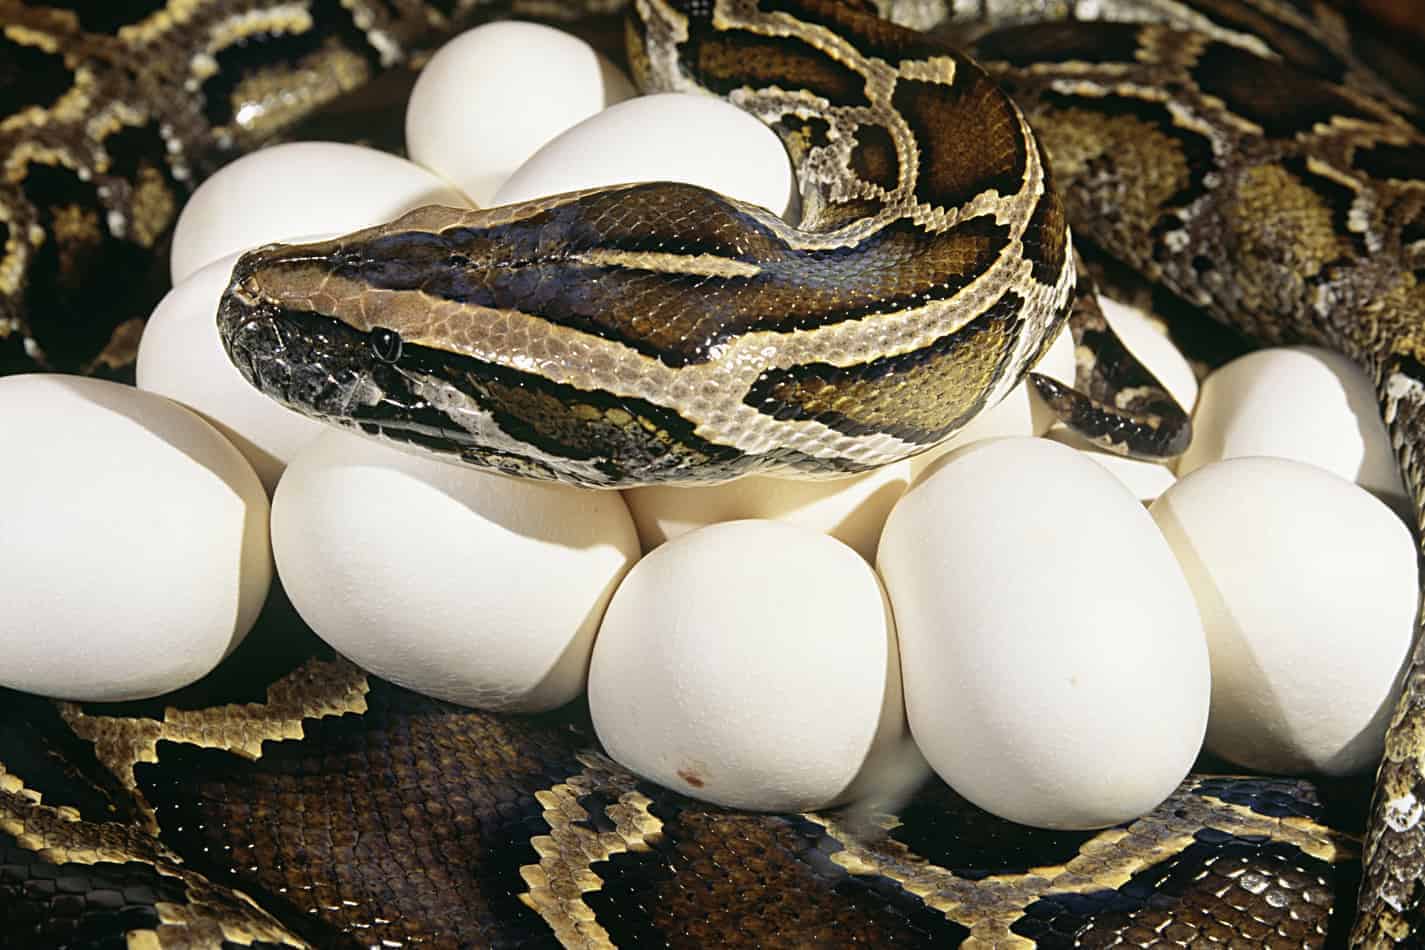 How Many Eggs Does a Burmese Python Lay?